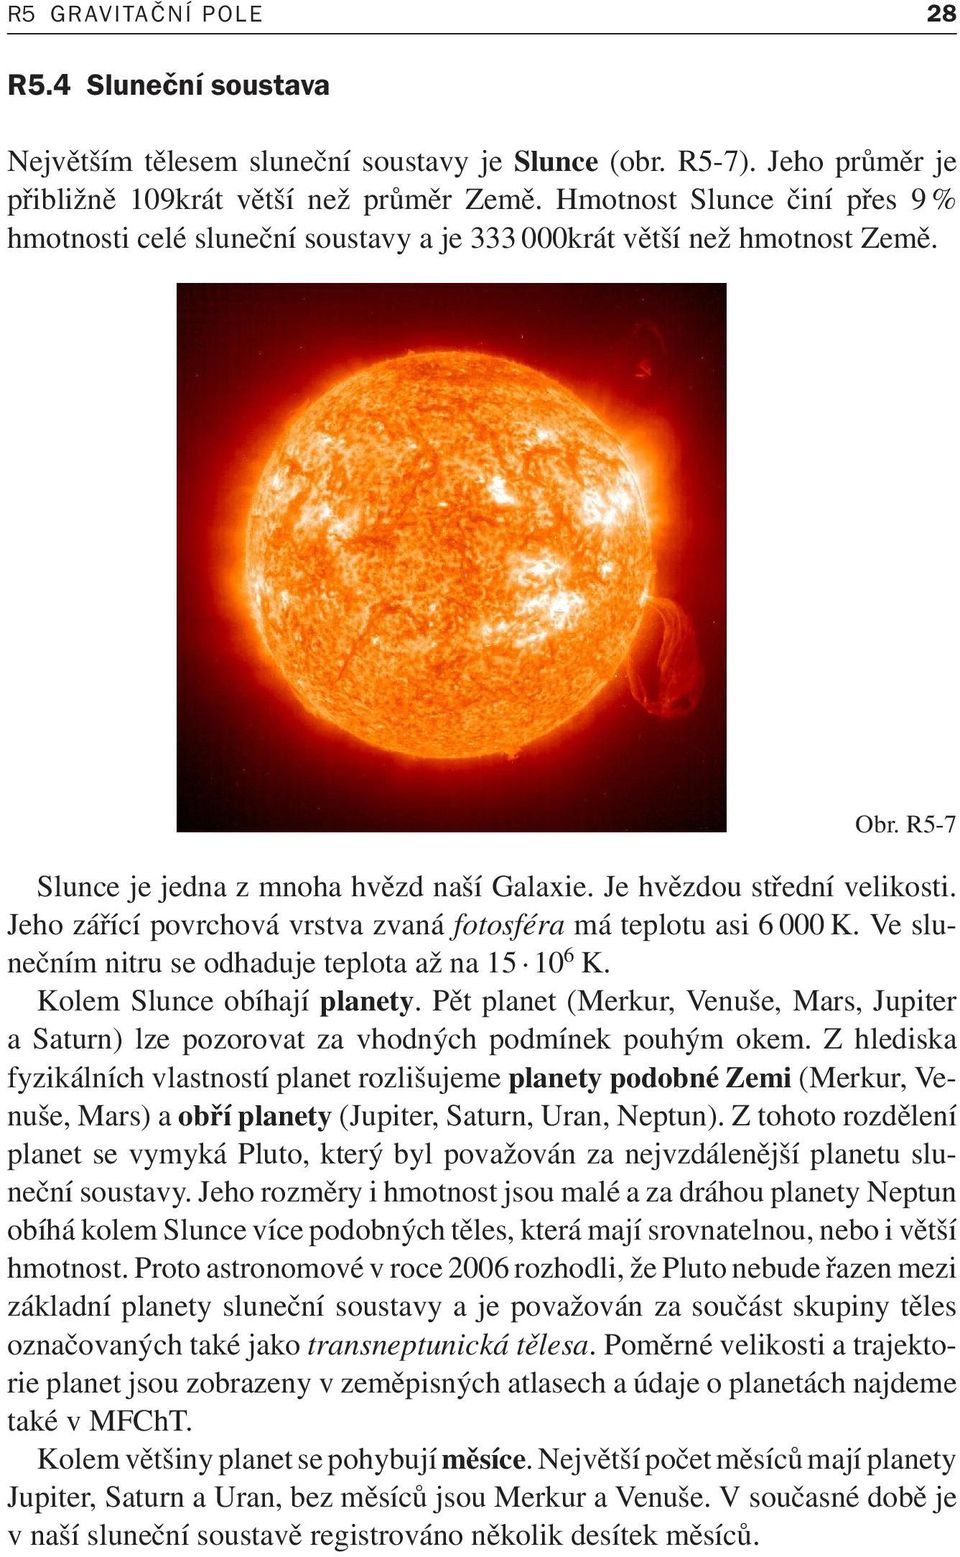 Jehozářícípovrchovávrstvazvanáfotosféramáteplotuasi6000K.Veslunečnímnitruseodhadujeteplotaažna15 10 6 K. Kolem Slunce obíhají planety.